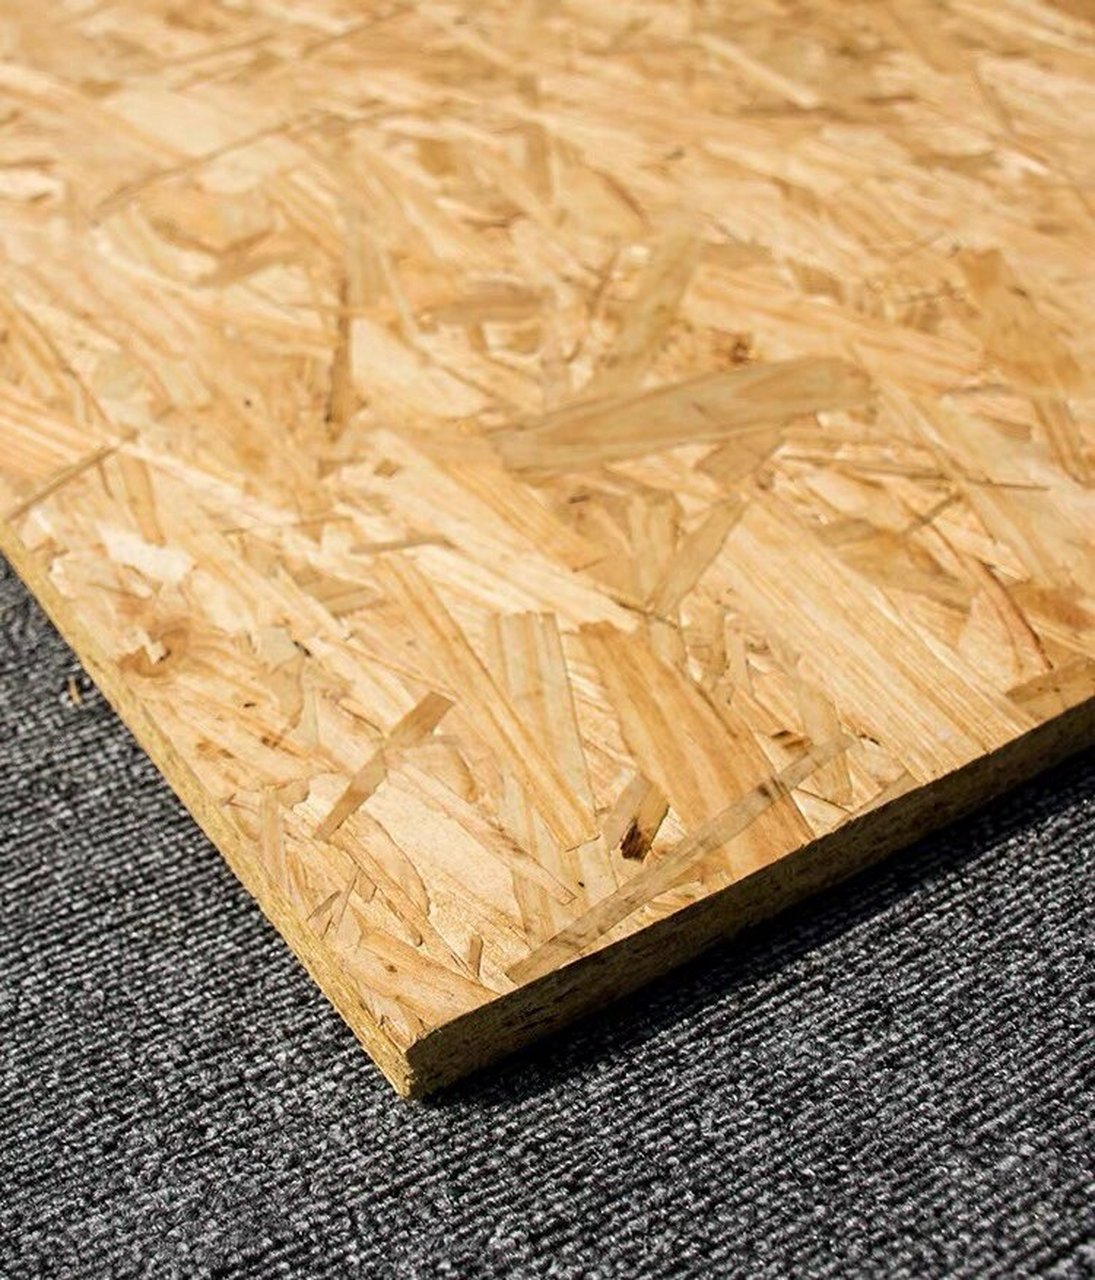 材料概要 欧松板(orientedstrandboard),即定向结构刨花板,是以小径材